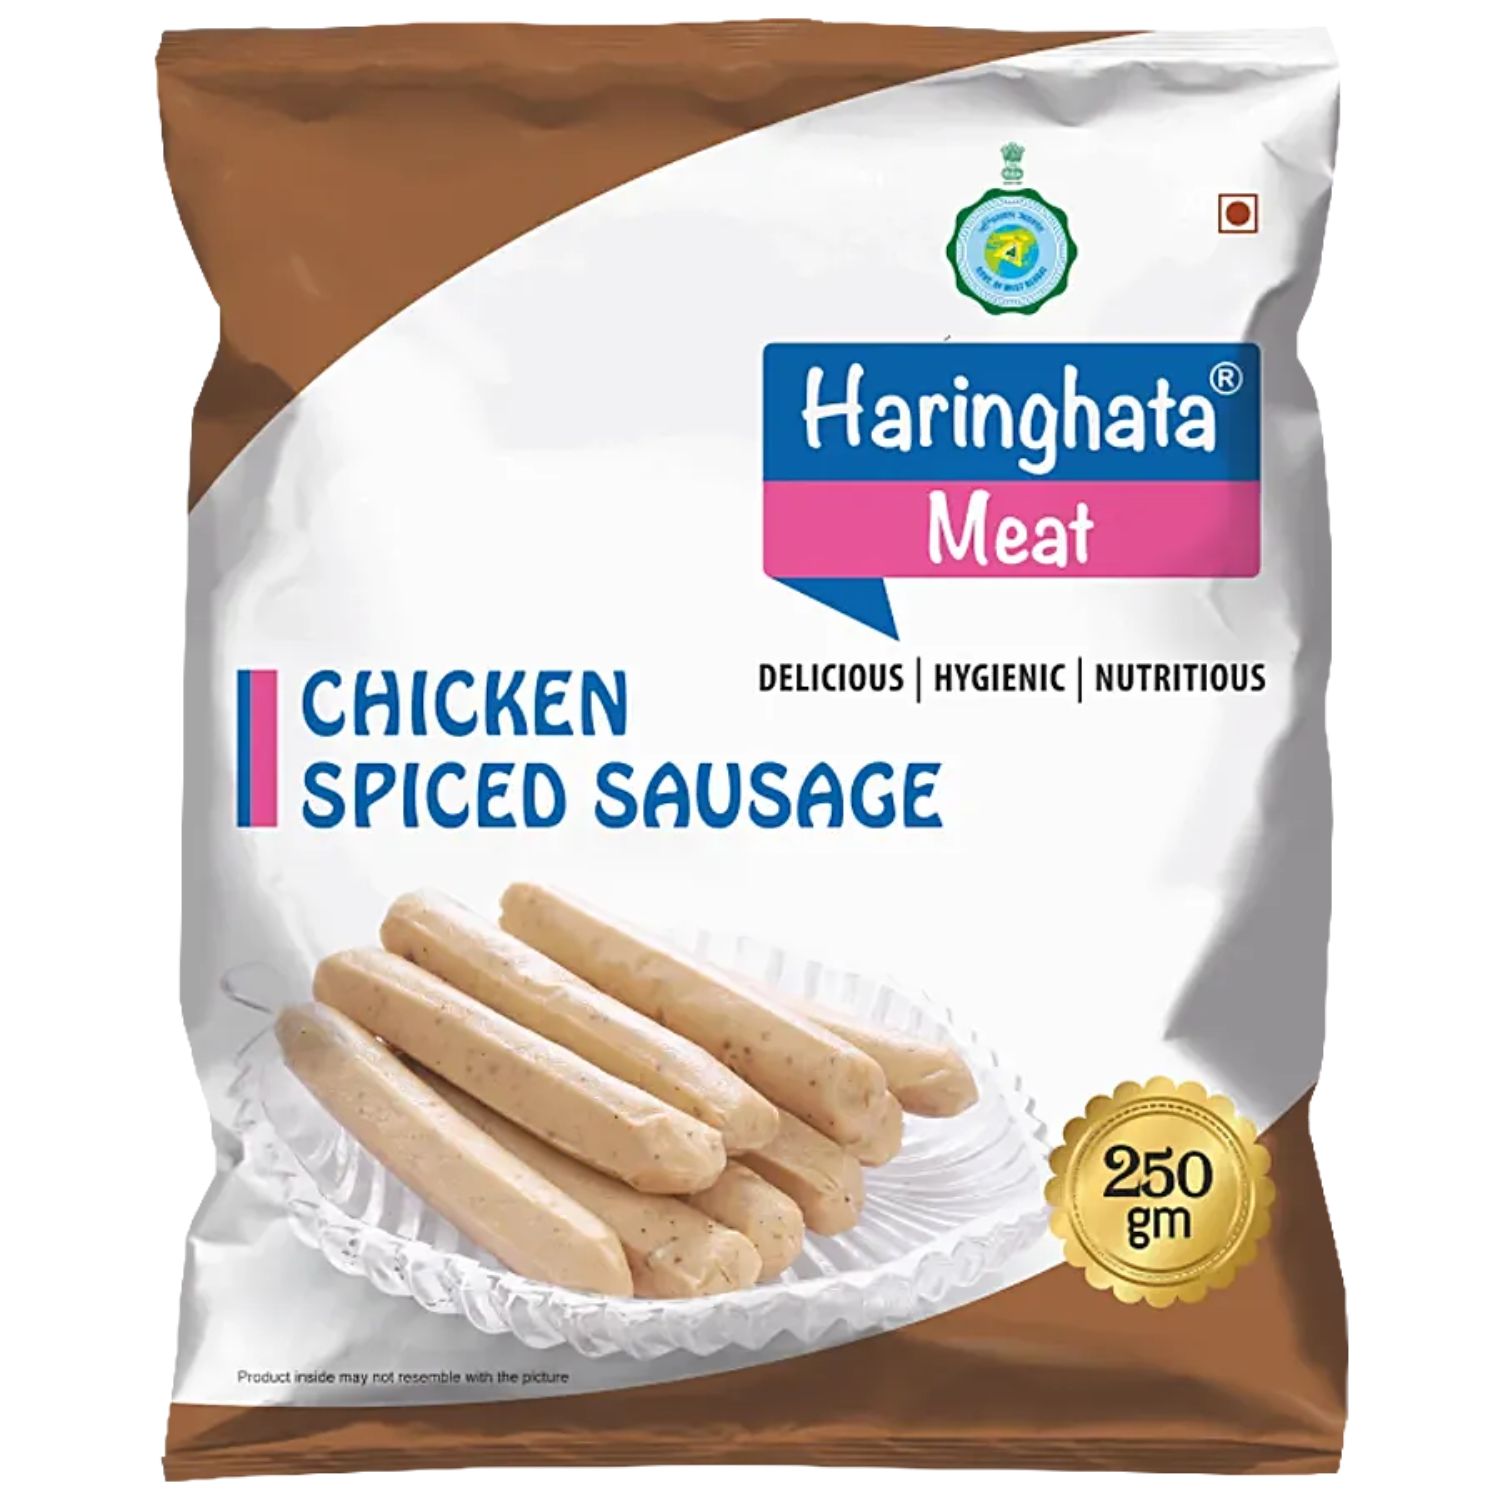 Haringhata Chicken Spiced Sausage